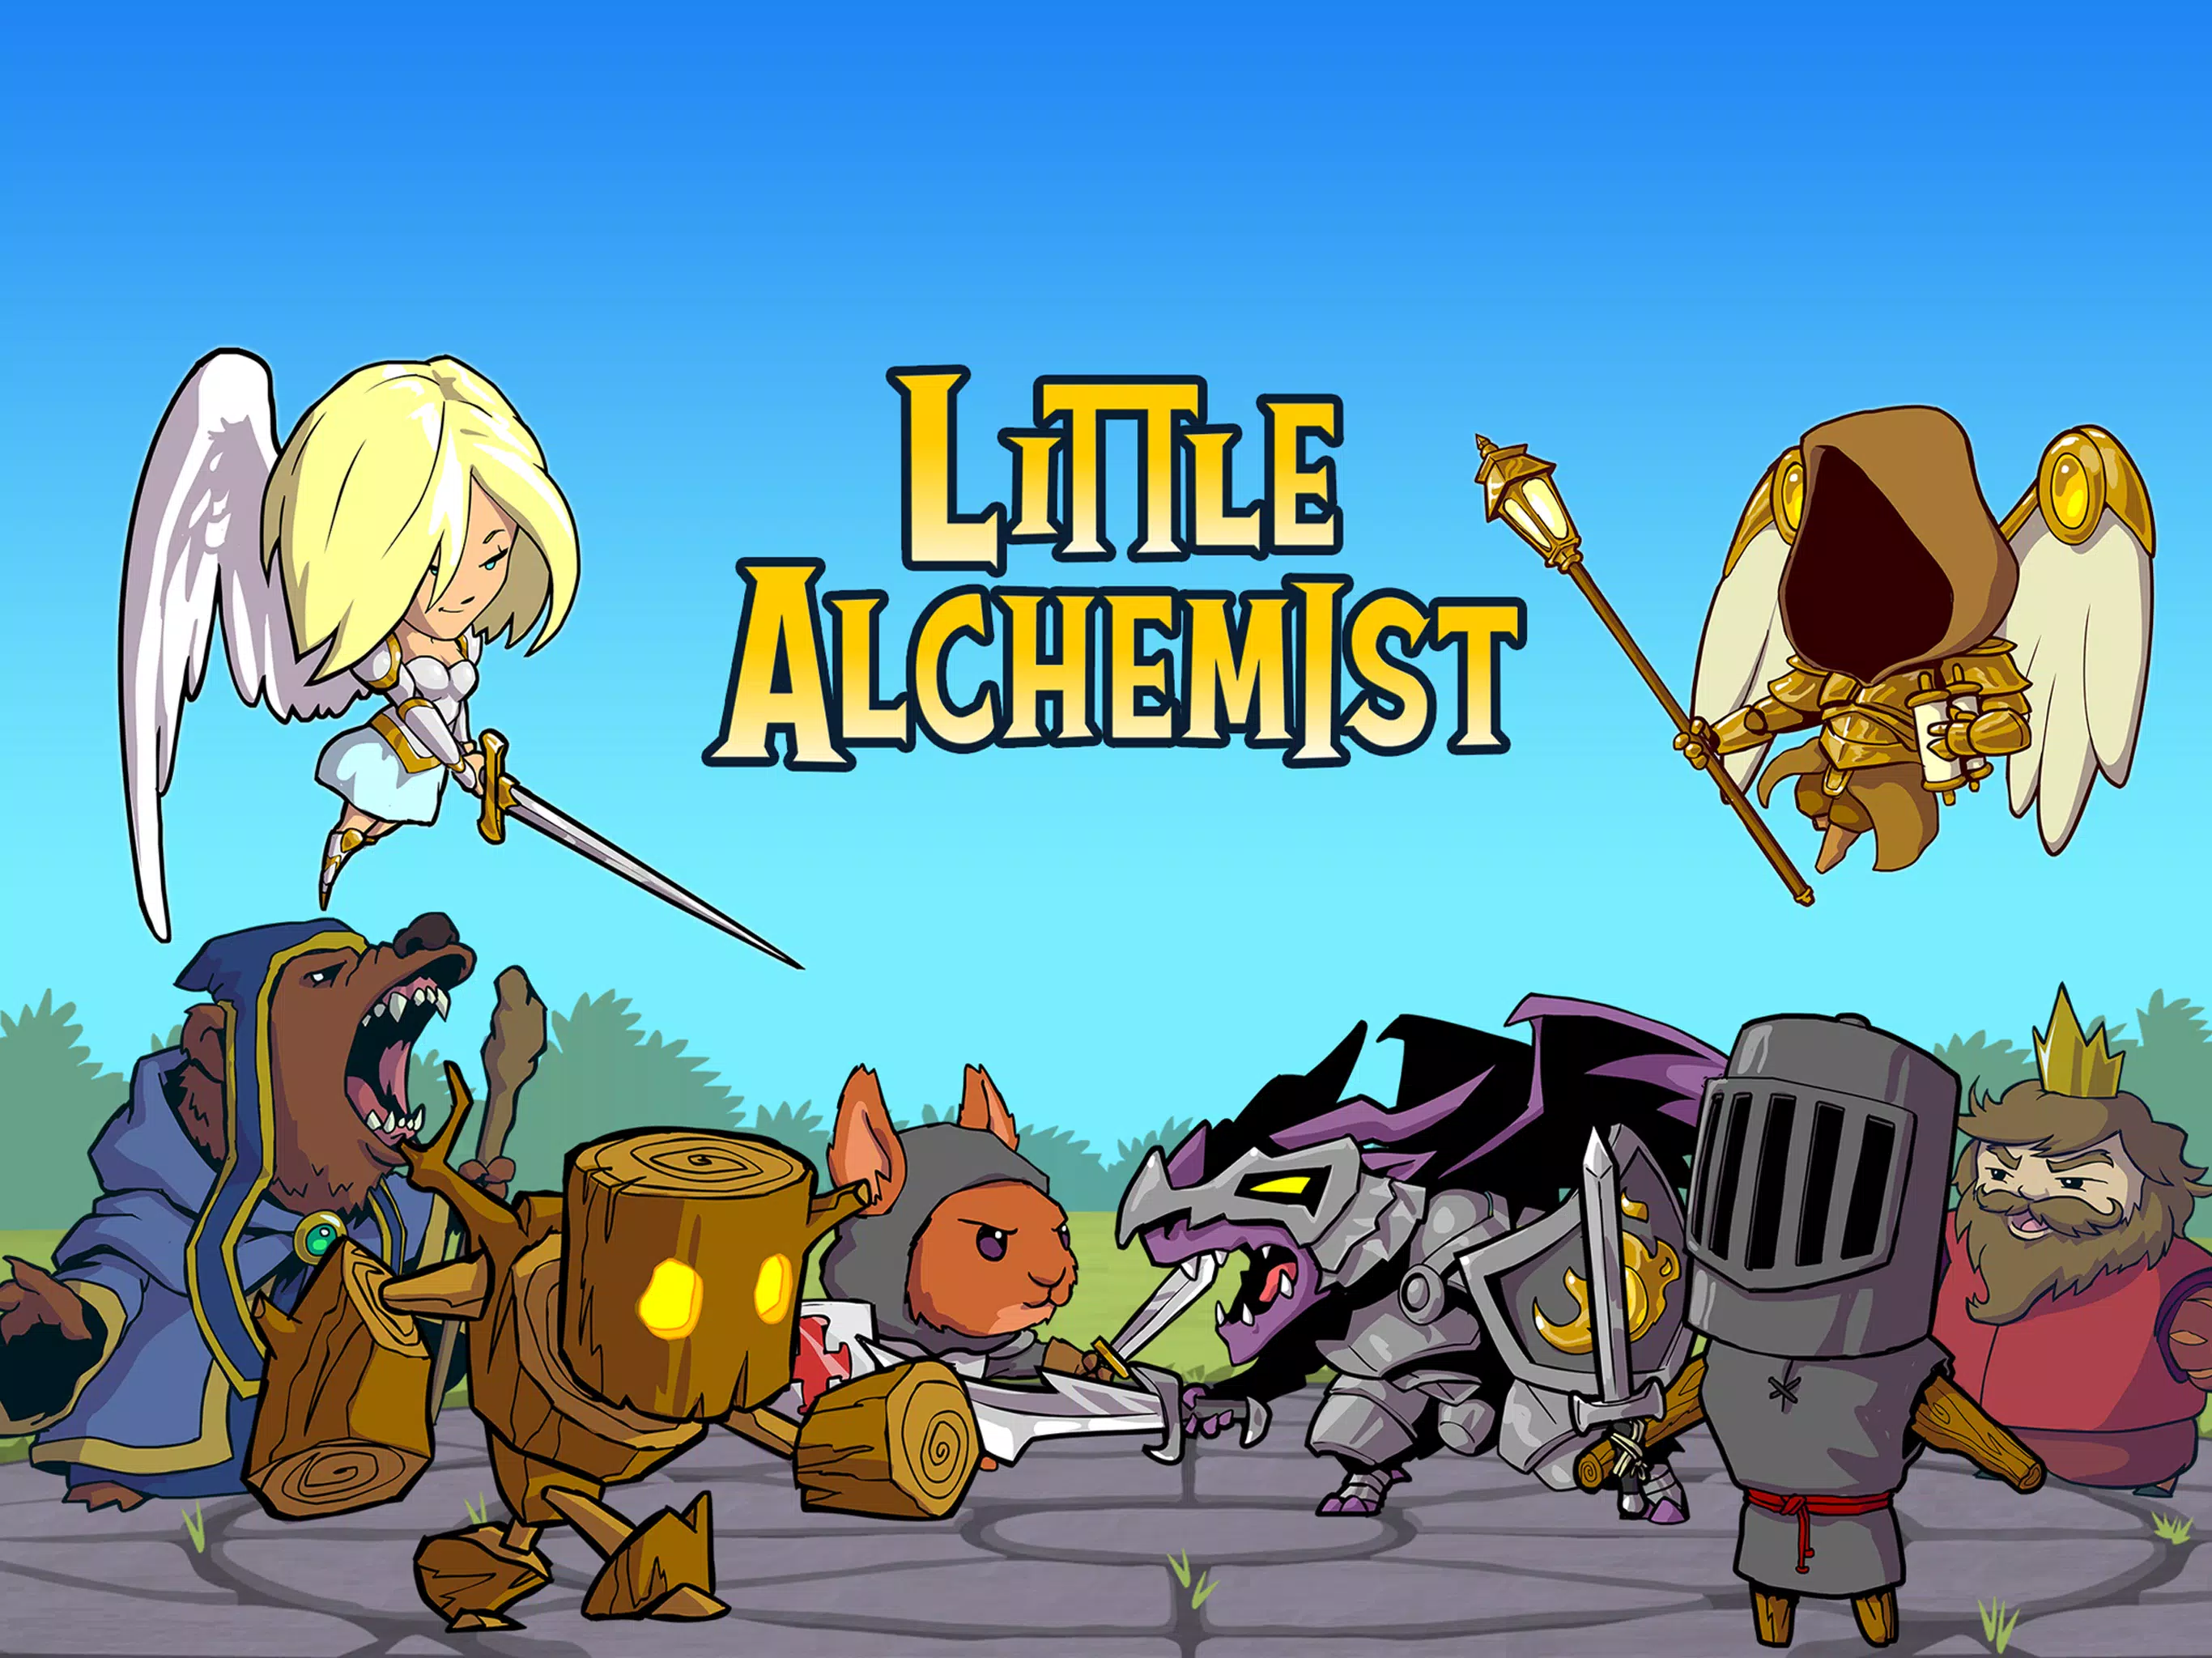 Little Alchemist by Kongregate